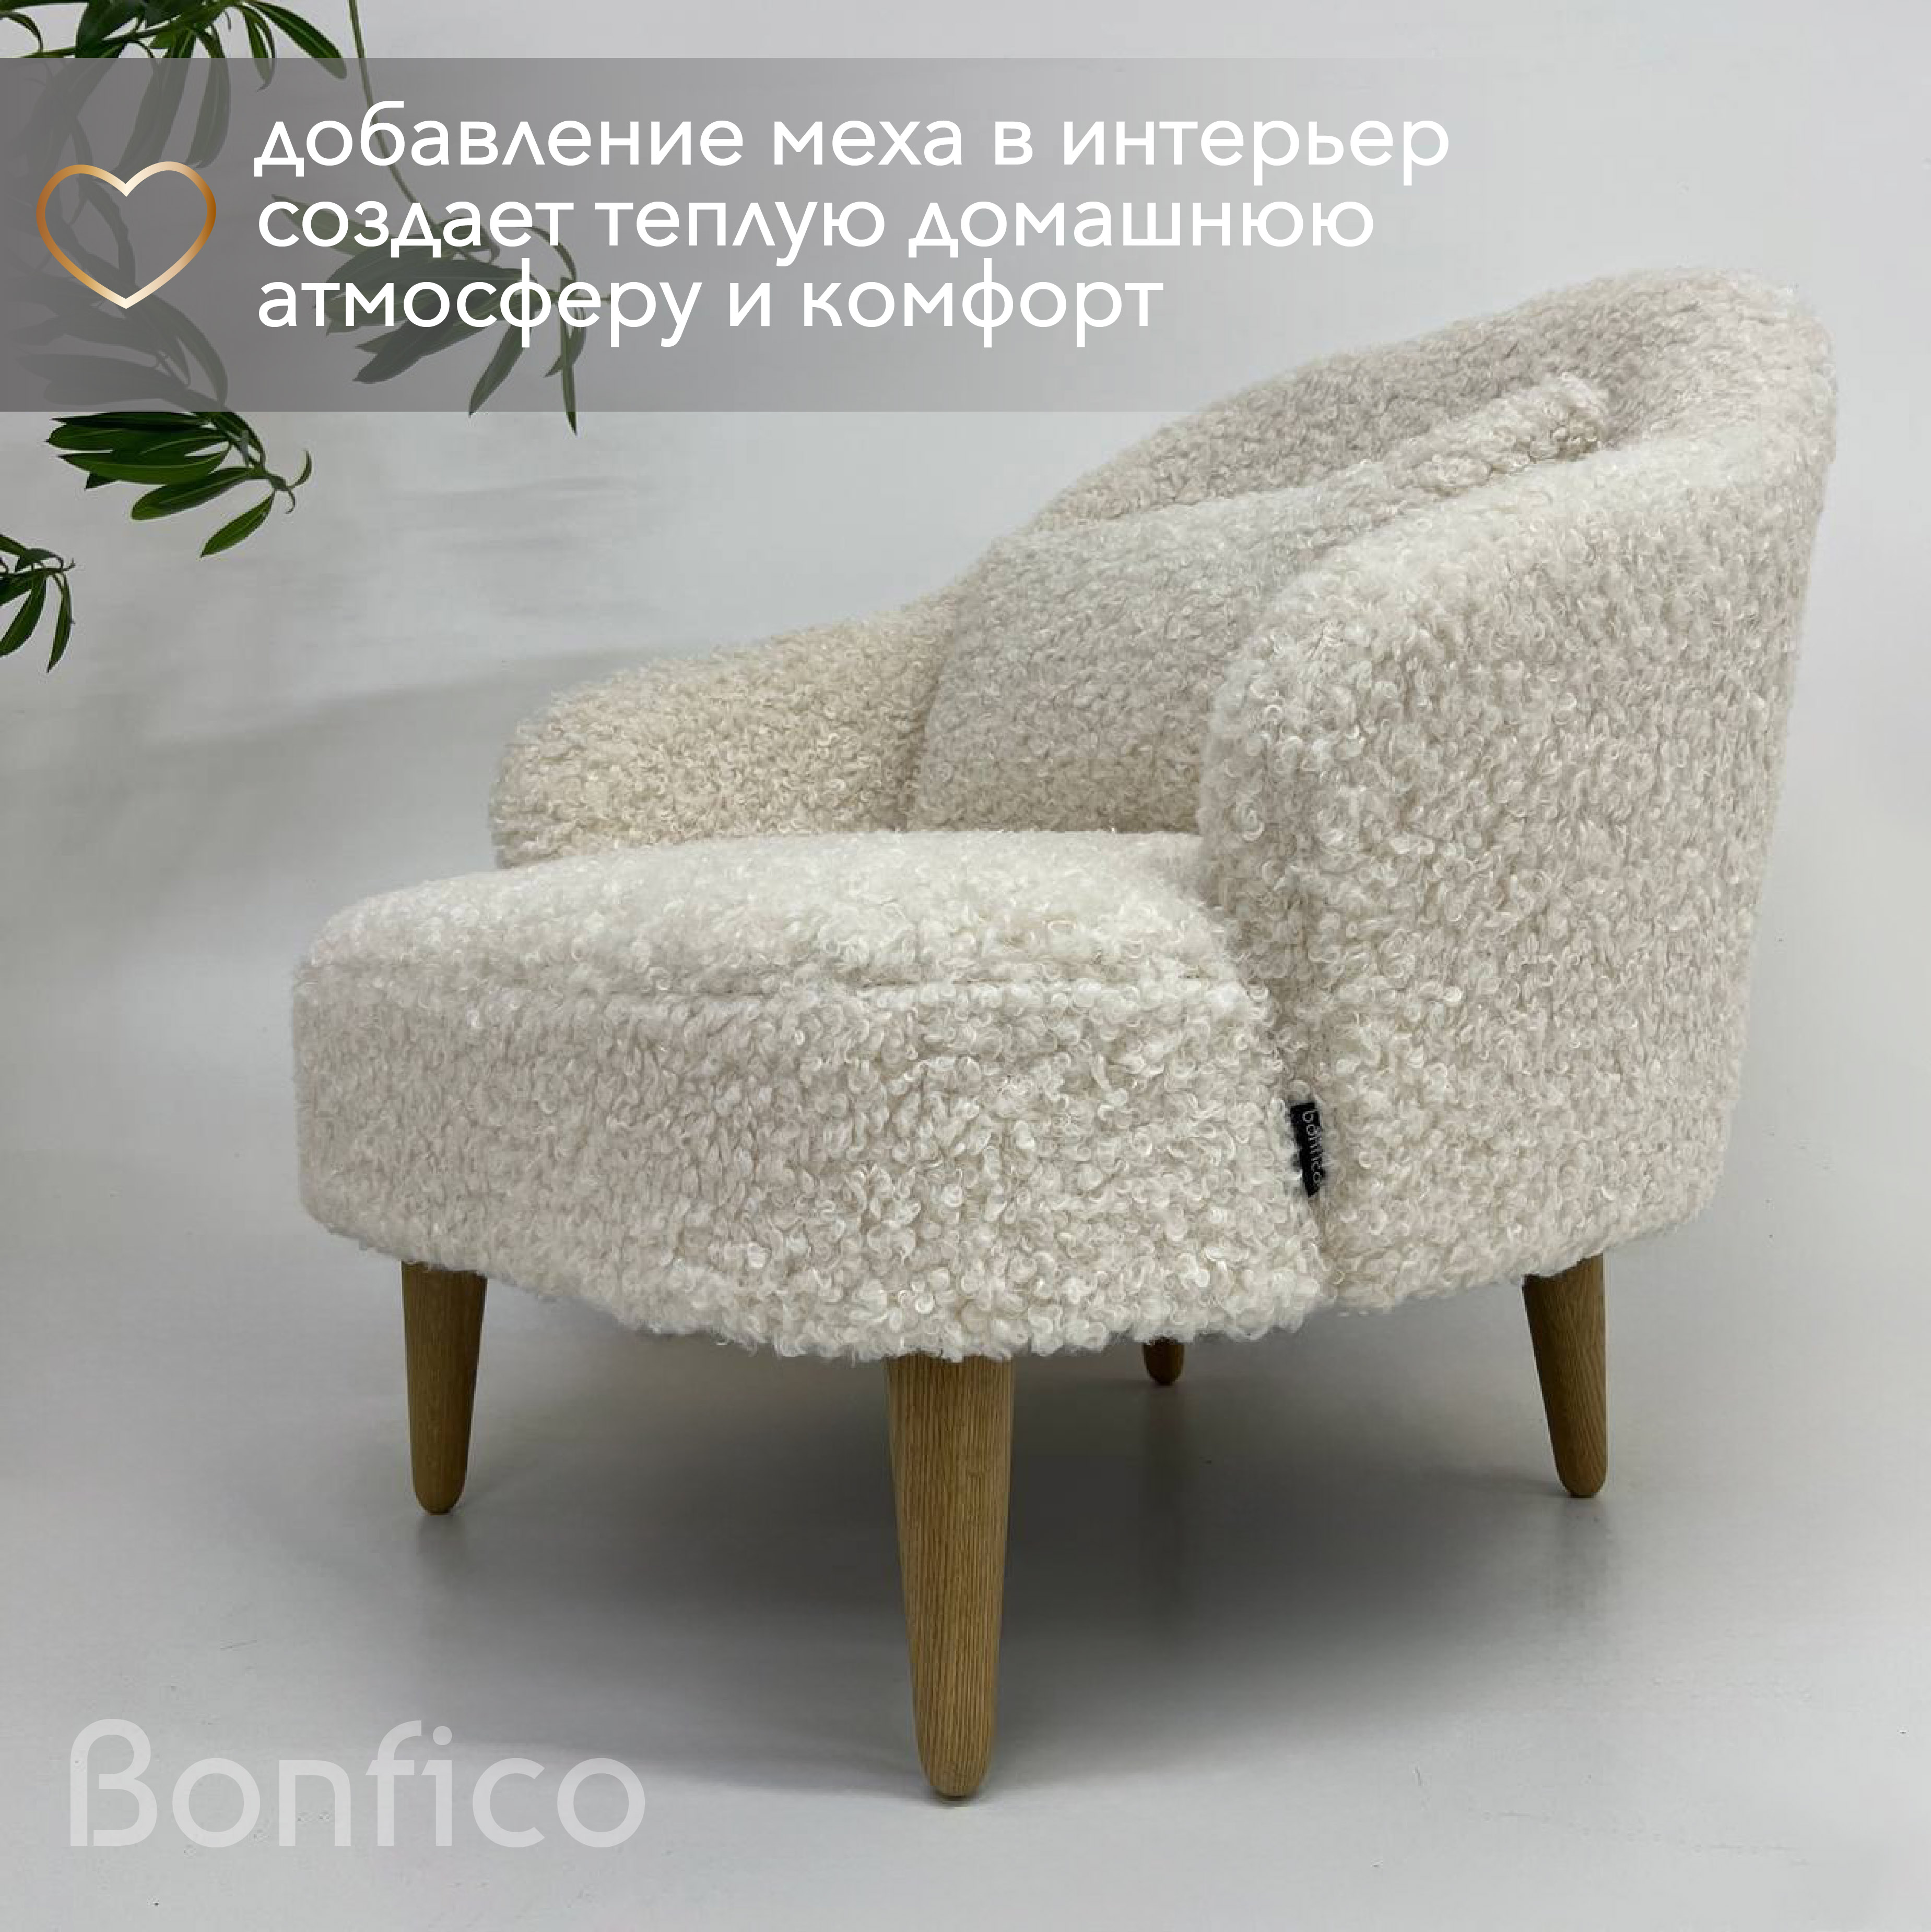 Кресло интерьерное Bonfico Унно, искусственный мех пломбир барашек, 78х78х78 см